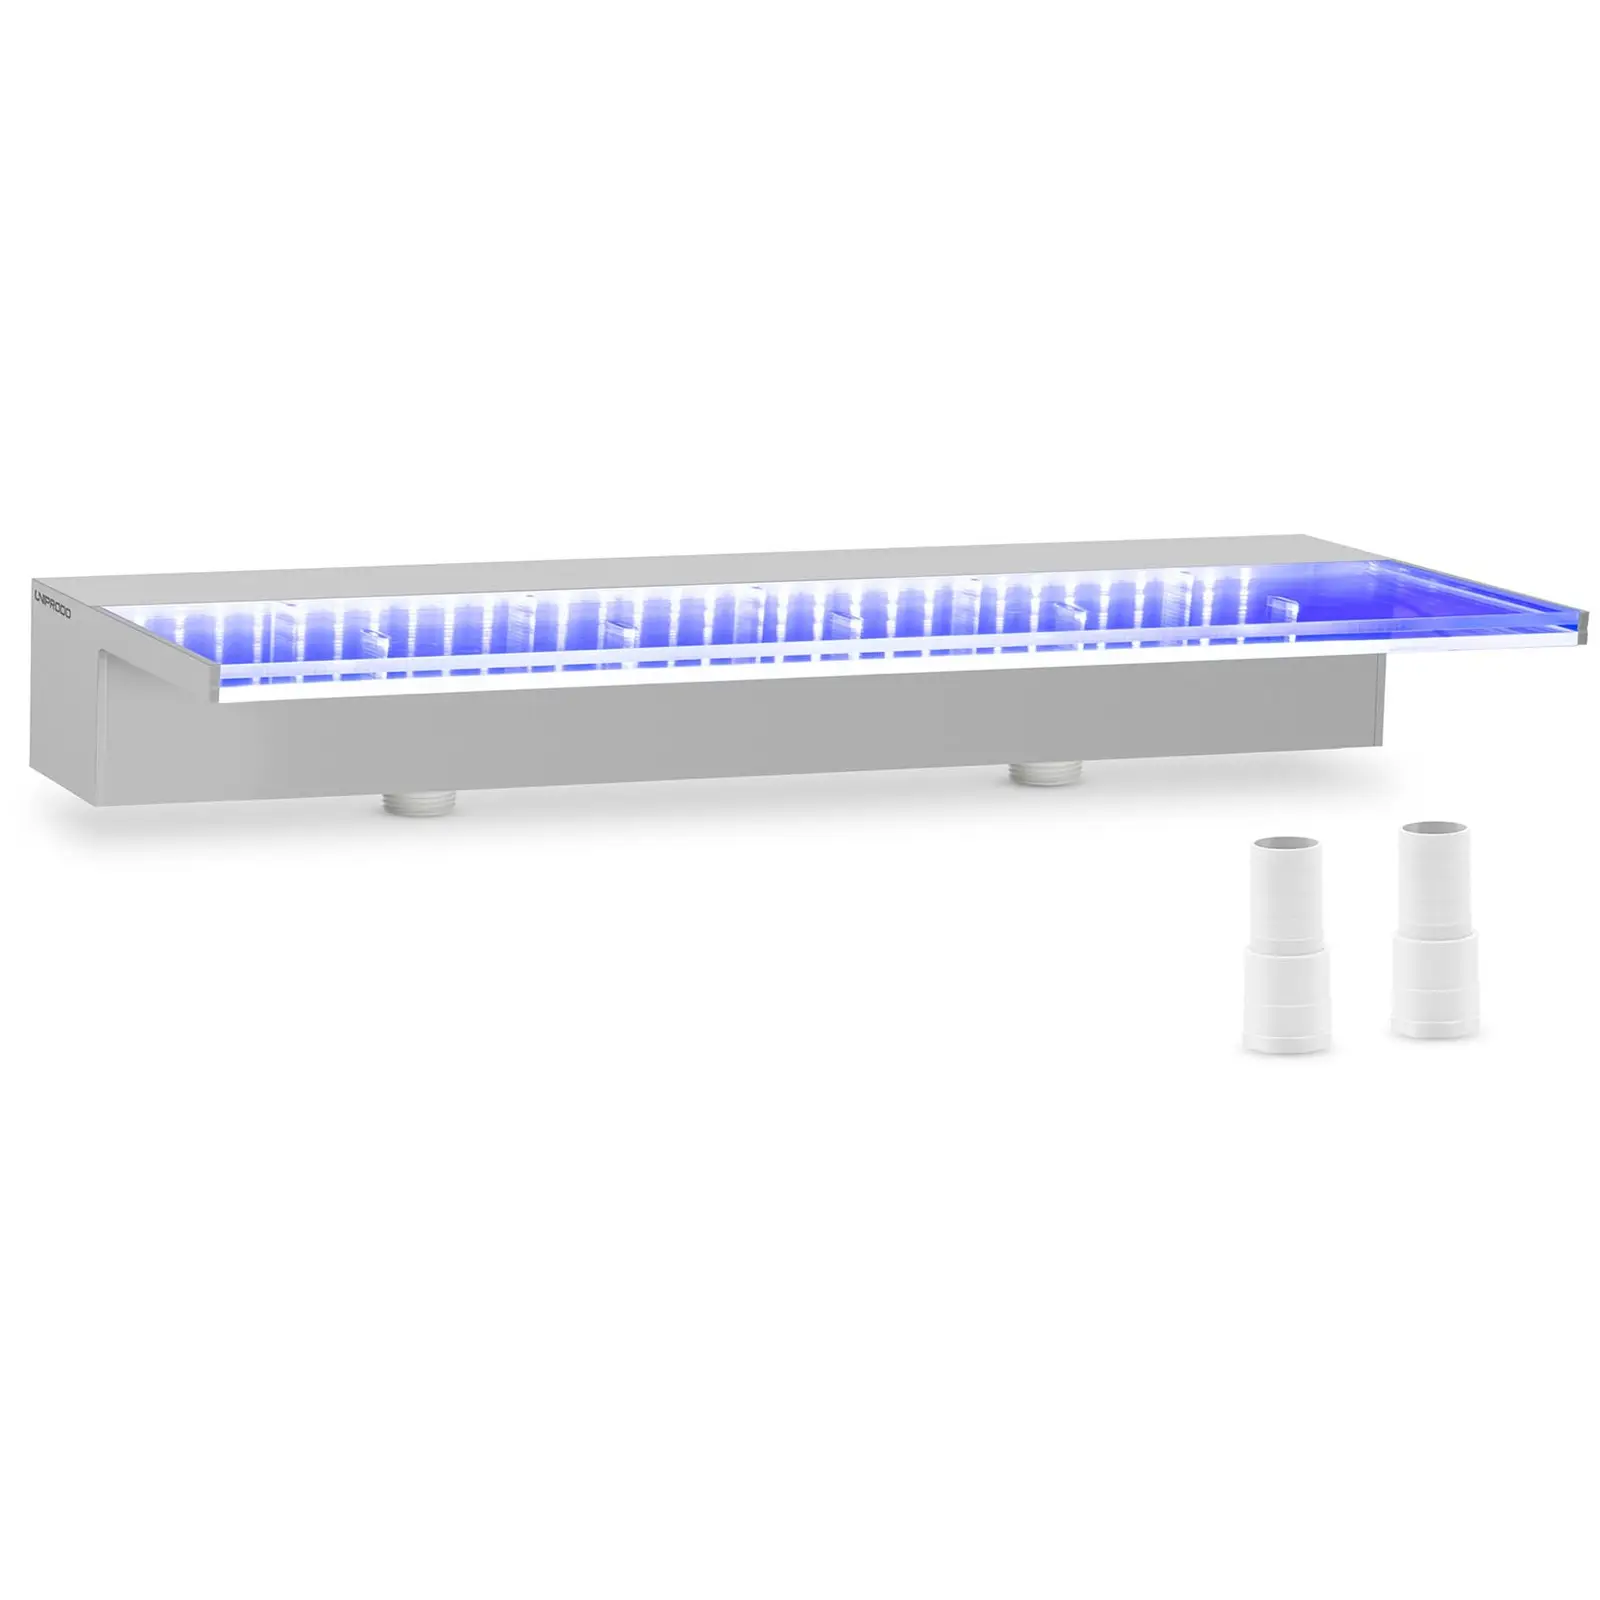 Medence szökőkút - 60 cm - LED világítás - kék/fehér - 135 mm-es vízkivezető nyílás